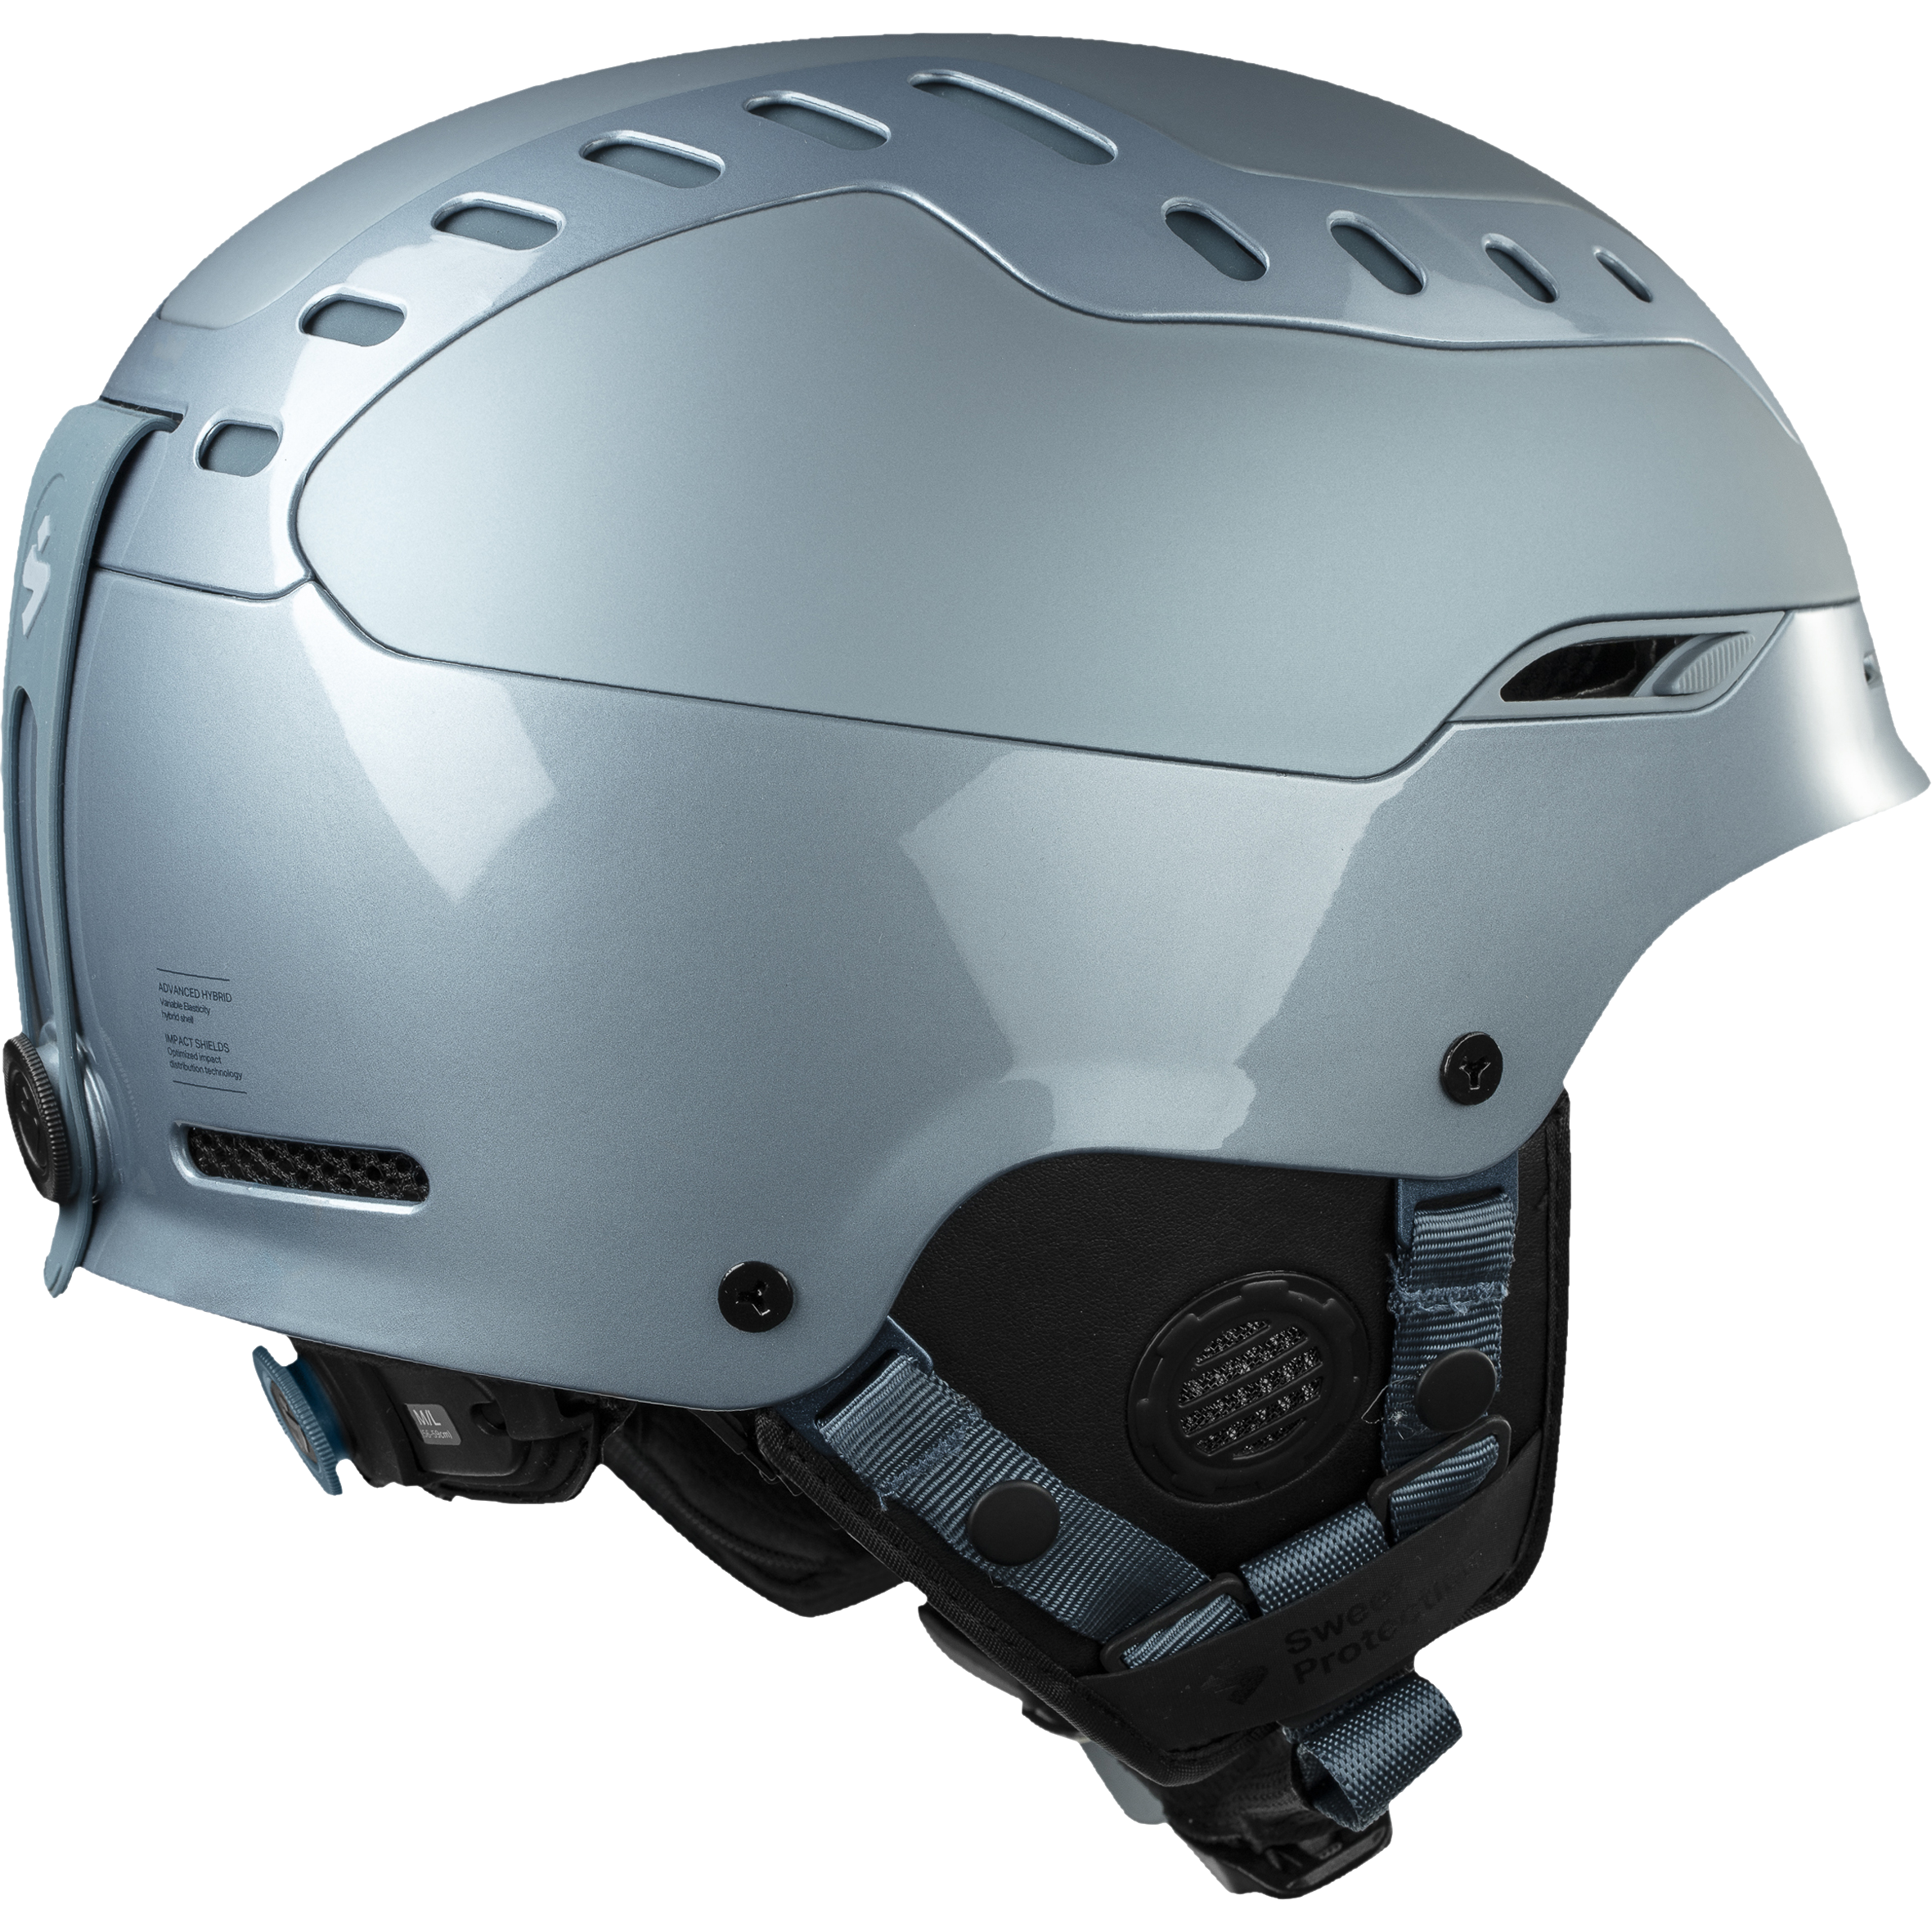 Switcher Helmet